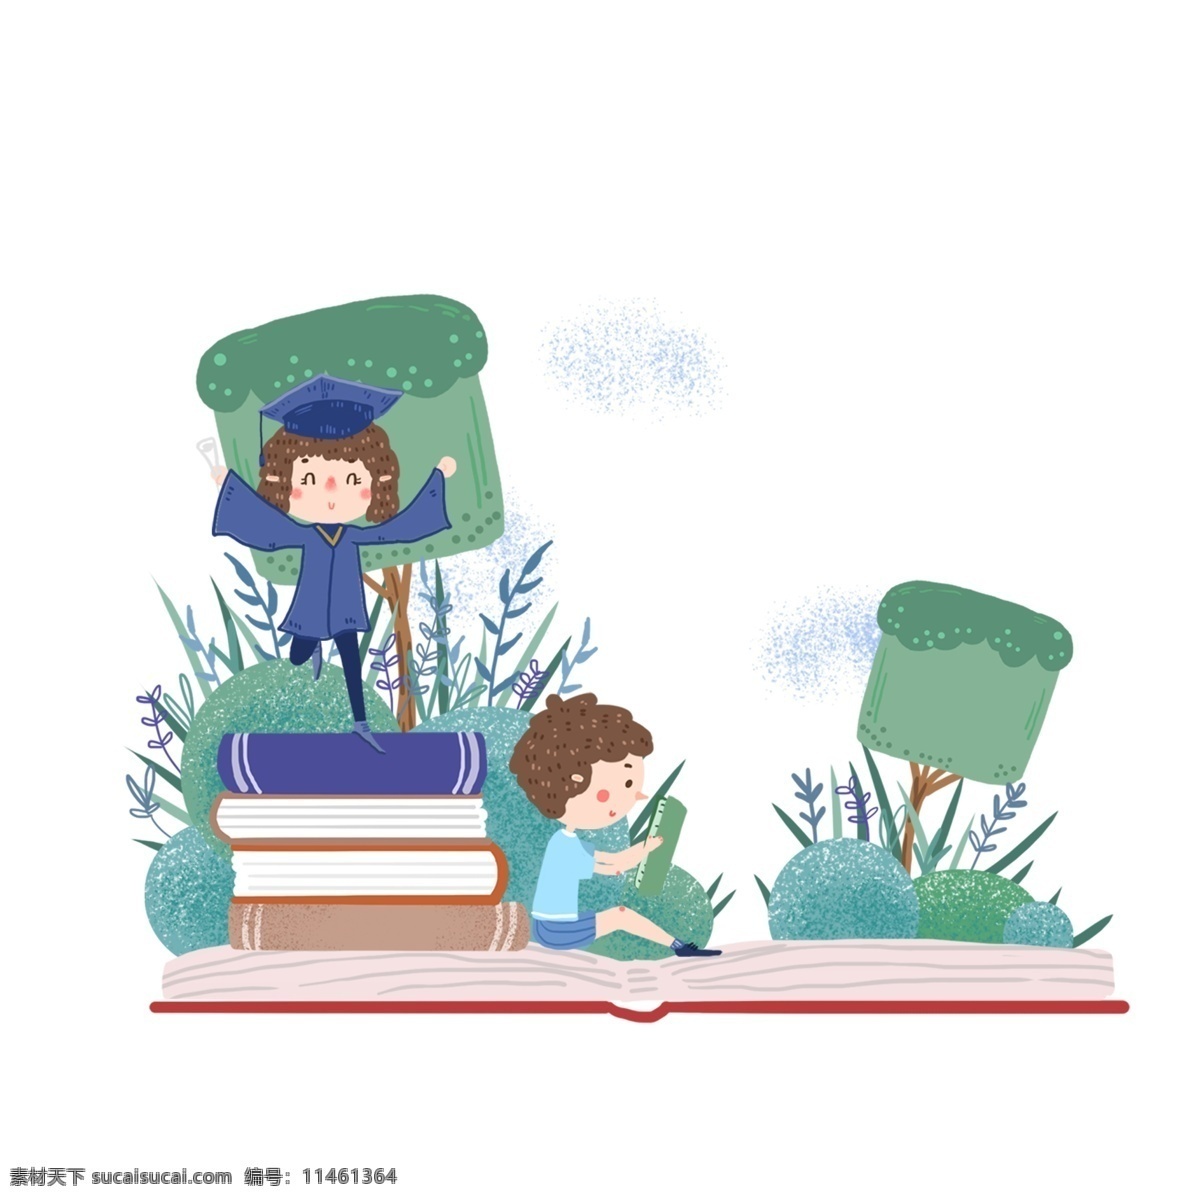 手绘 卡通 阅读 日 图案 全民阅读 女孩 男孩 书堆 绿色 设计元素 元素设计 简约 创意元素 免扣元素